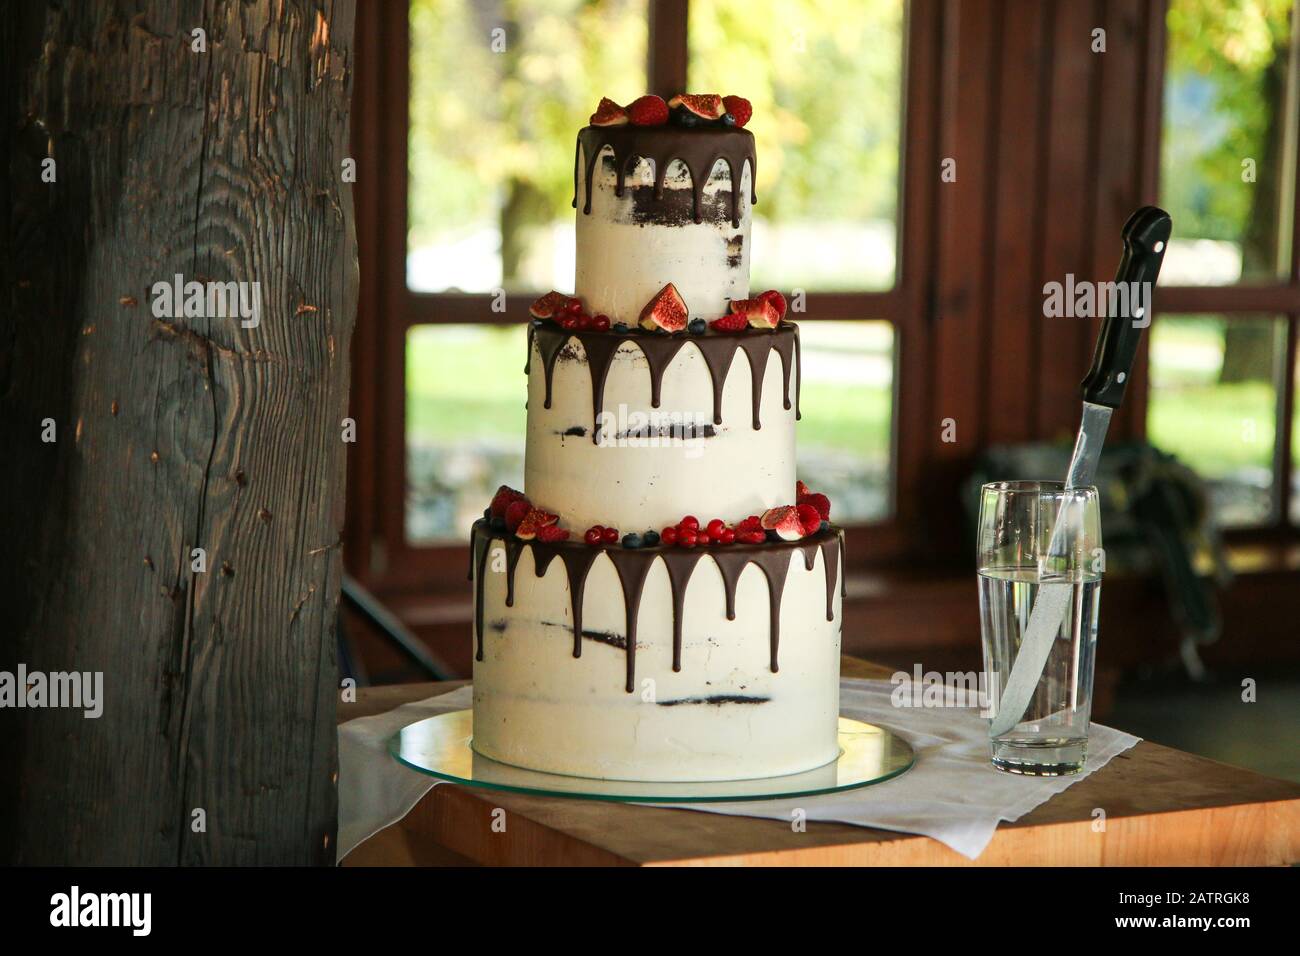 Une image détaillée du grand gâteau de mariage avec fruits de la forêt et fraises. Banque D'Images